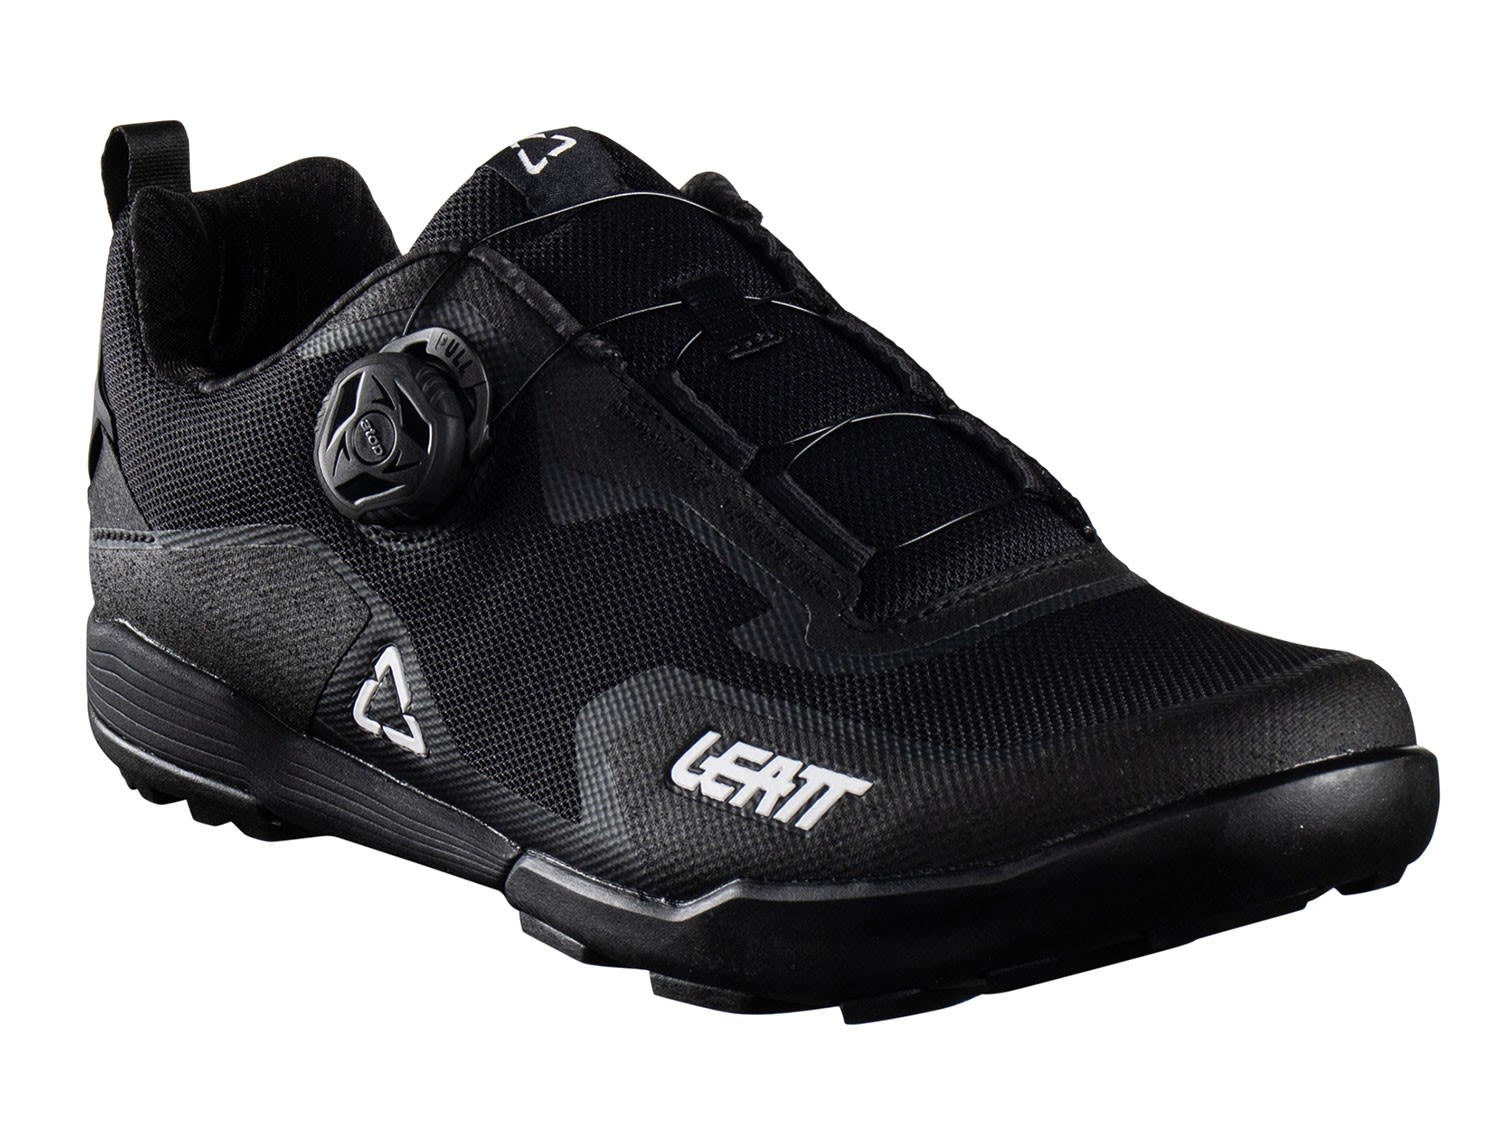 Leatt 6-0 Klickpedal Shoe Schwarz- All-Mountain-Trekking- Grsse EU 40 - Farbe Black unter Leatt